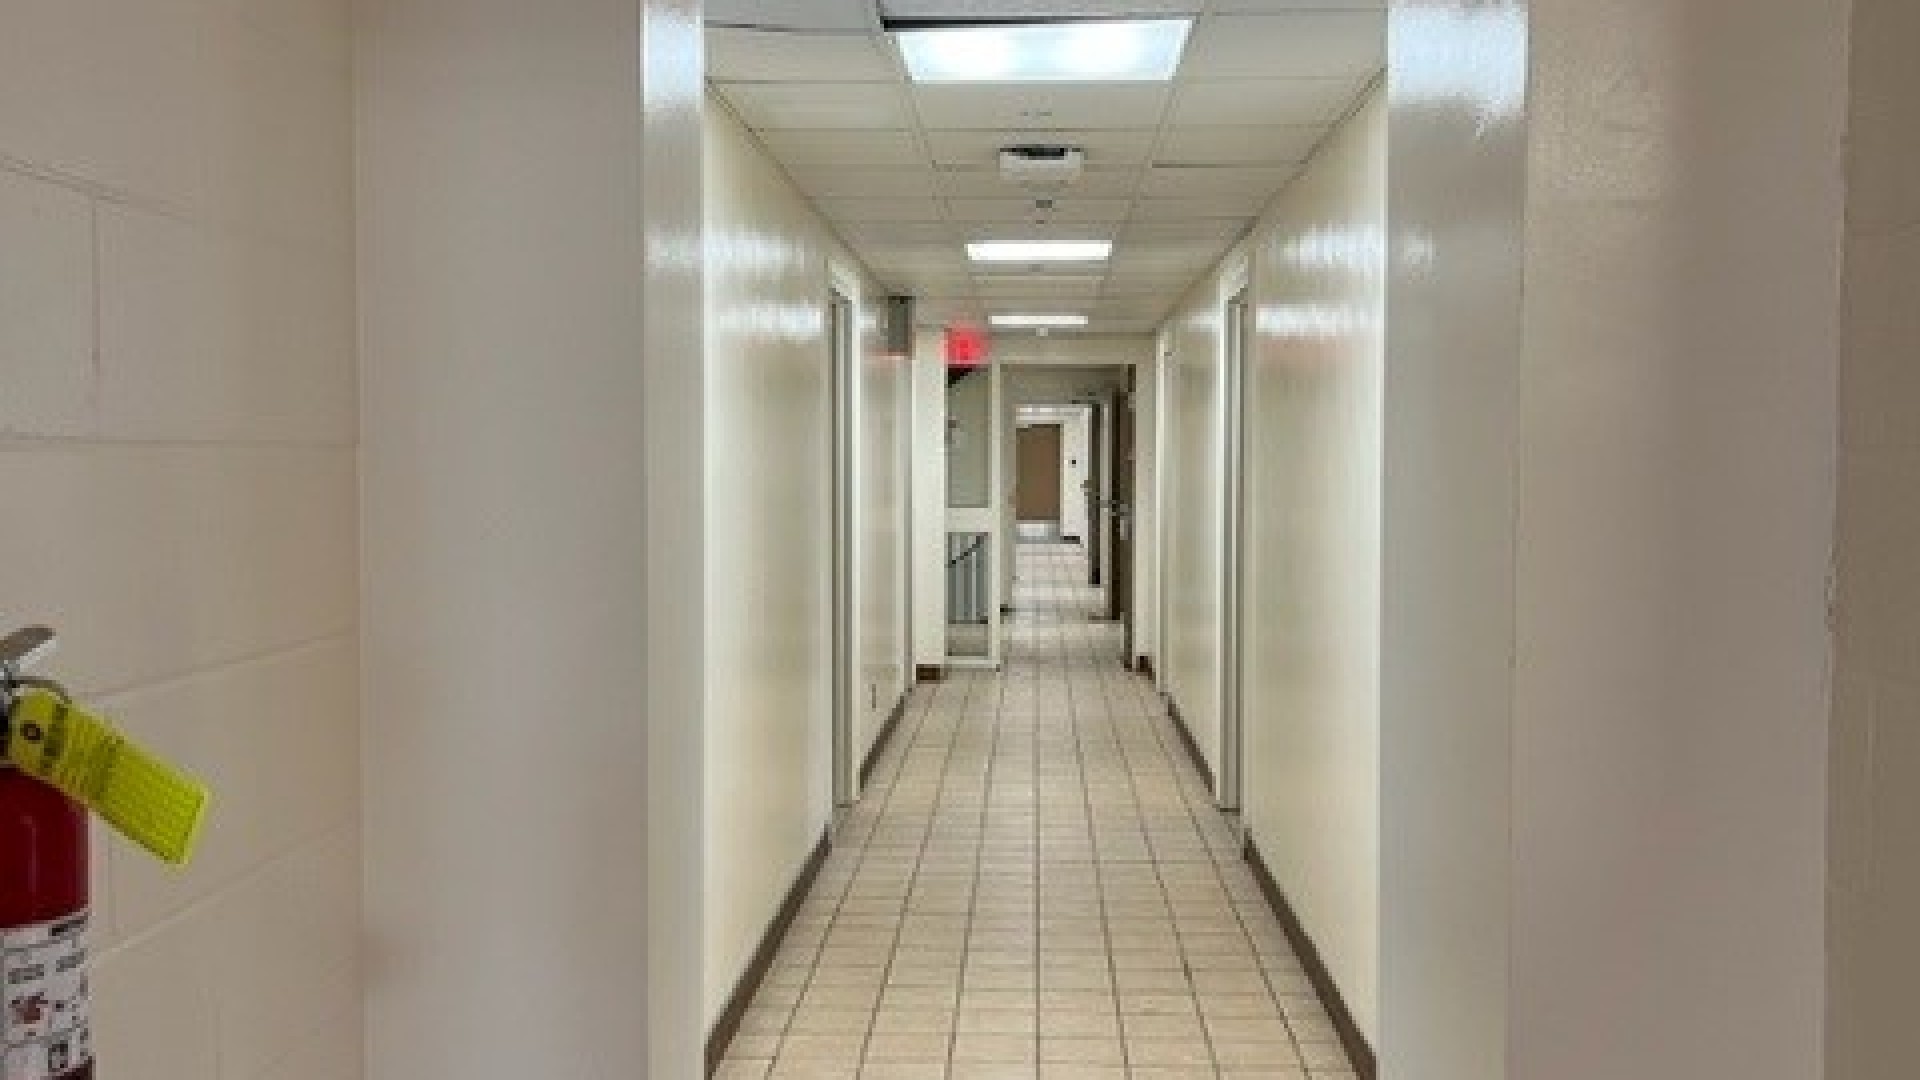 Hallway in MacKinnon Hall